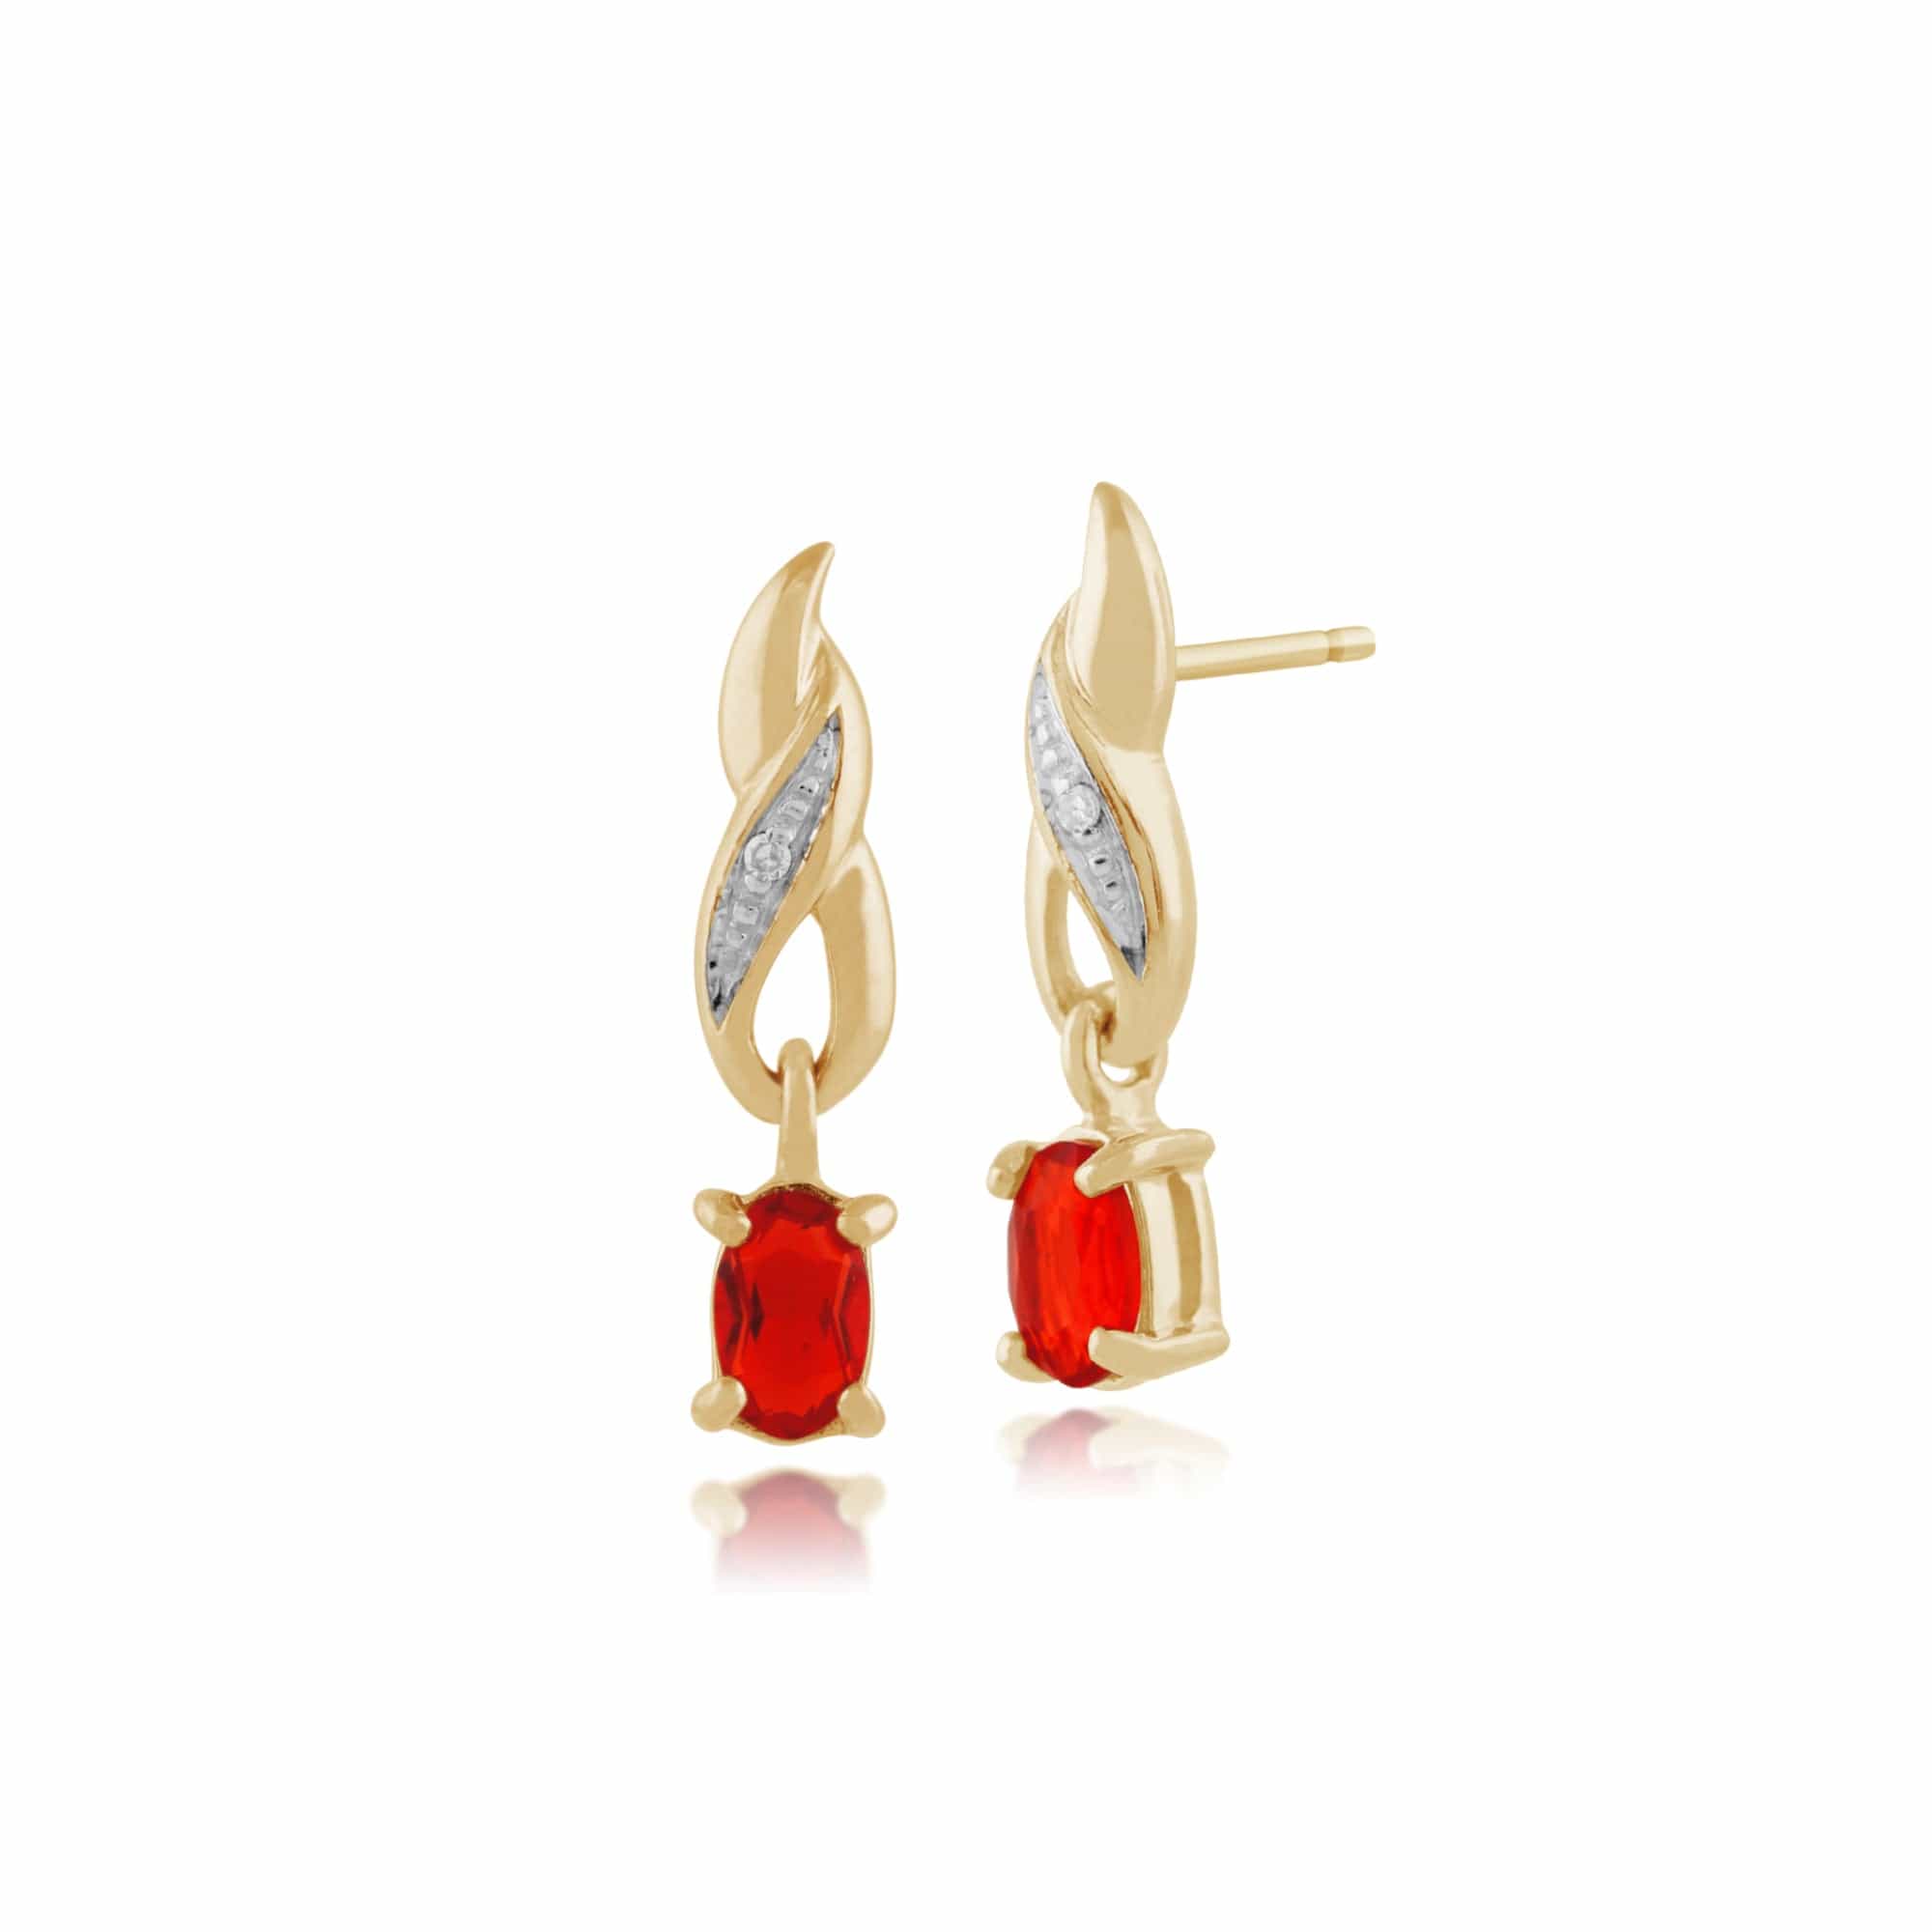 Classic Oval Fire Opal & Diamond Drop Earrings in 9ct Yellow Gold - Gemondo